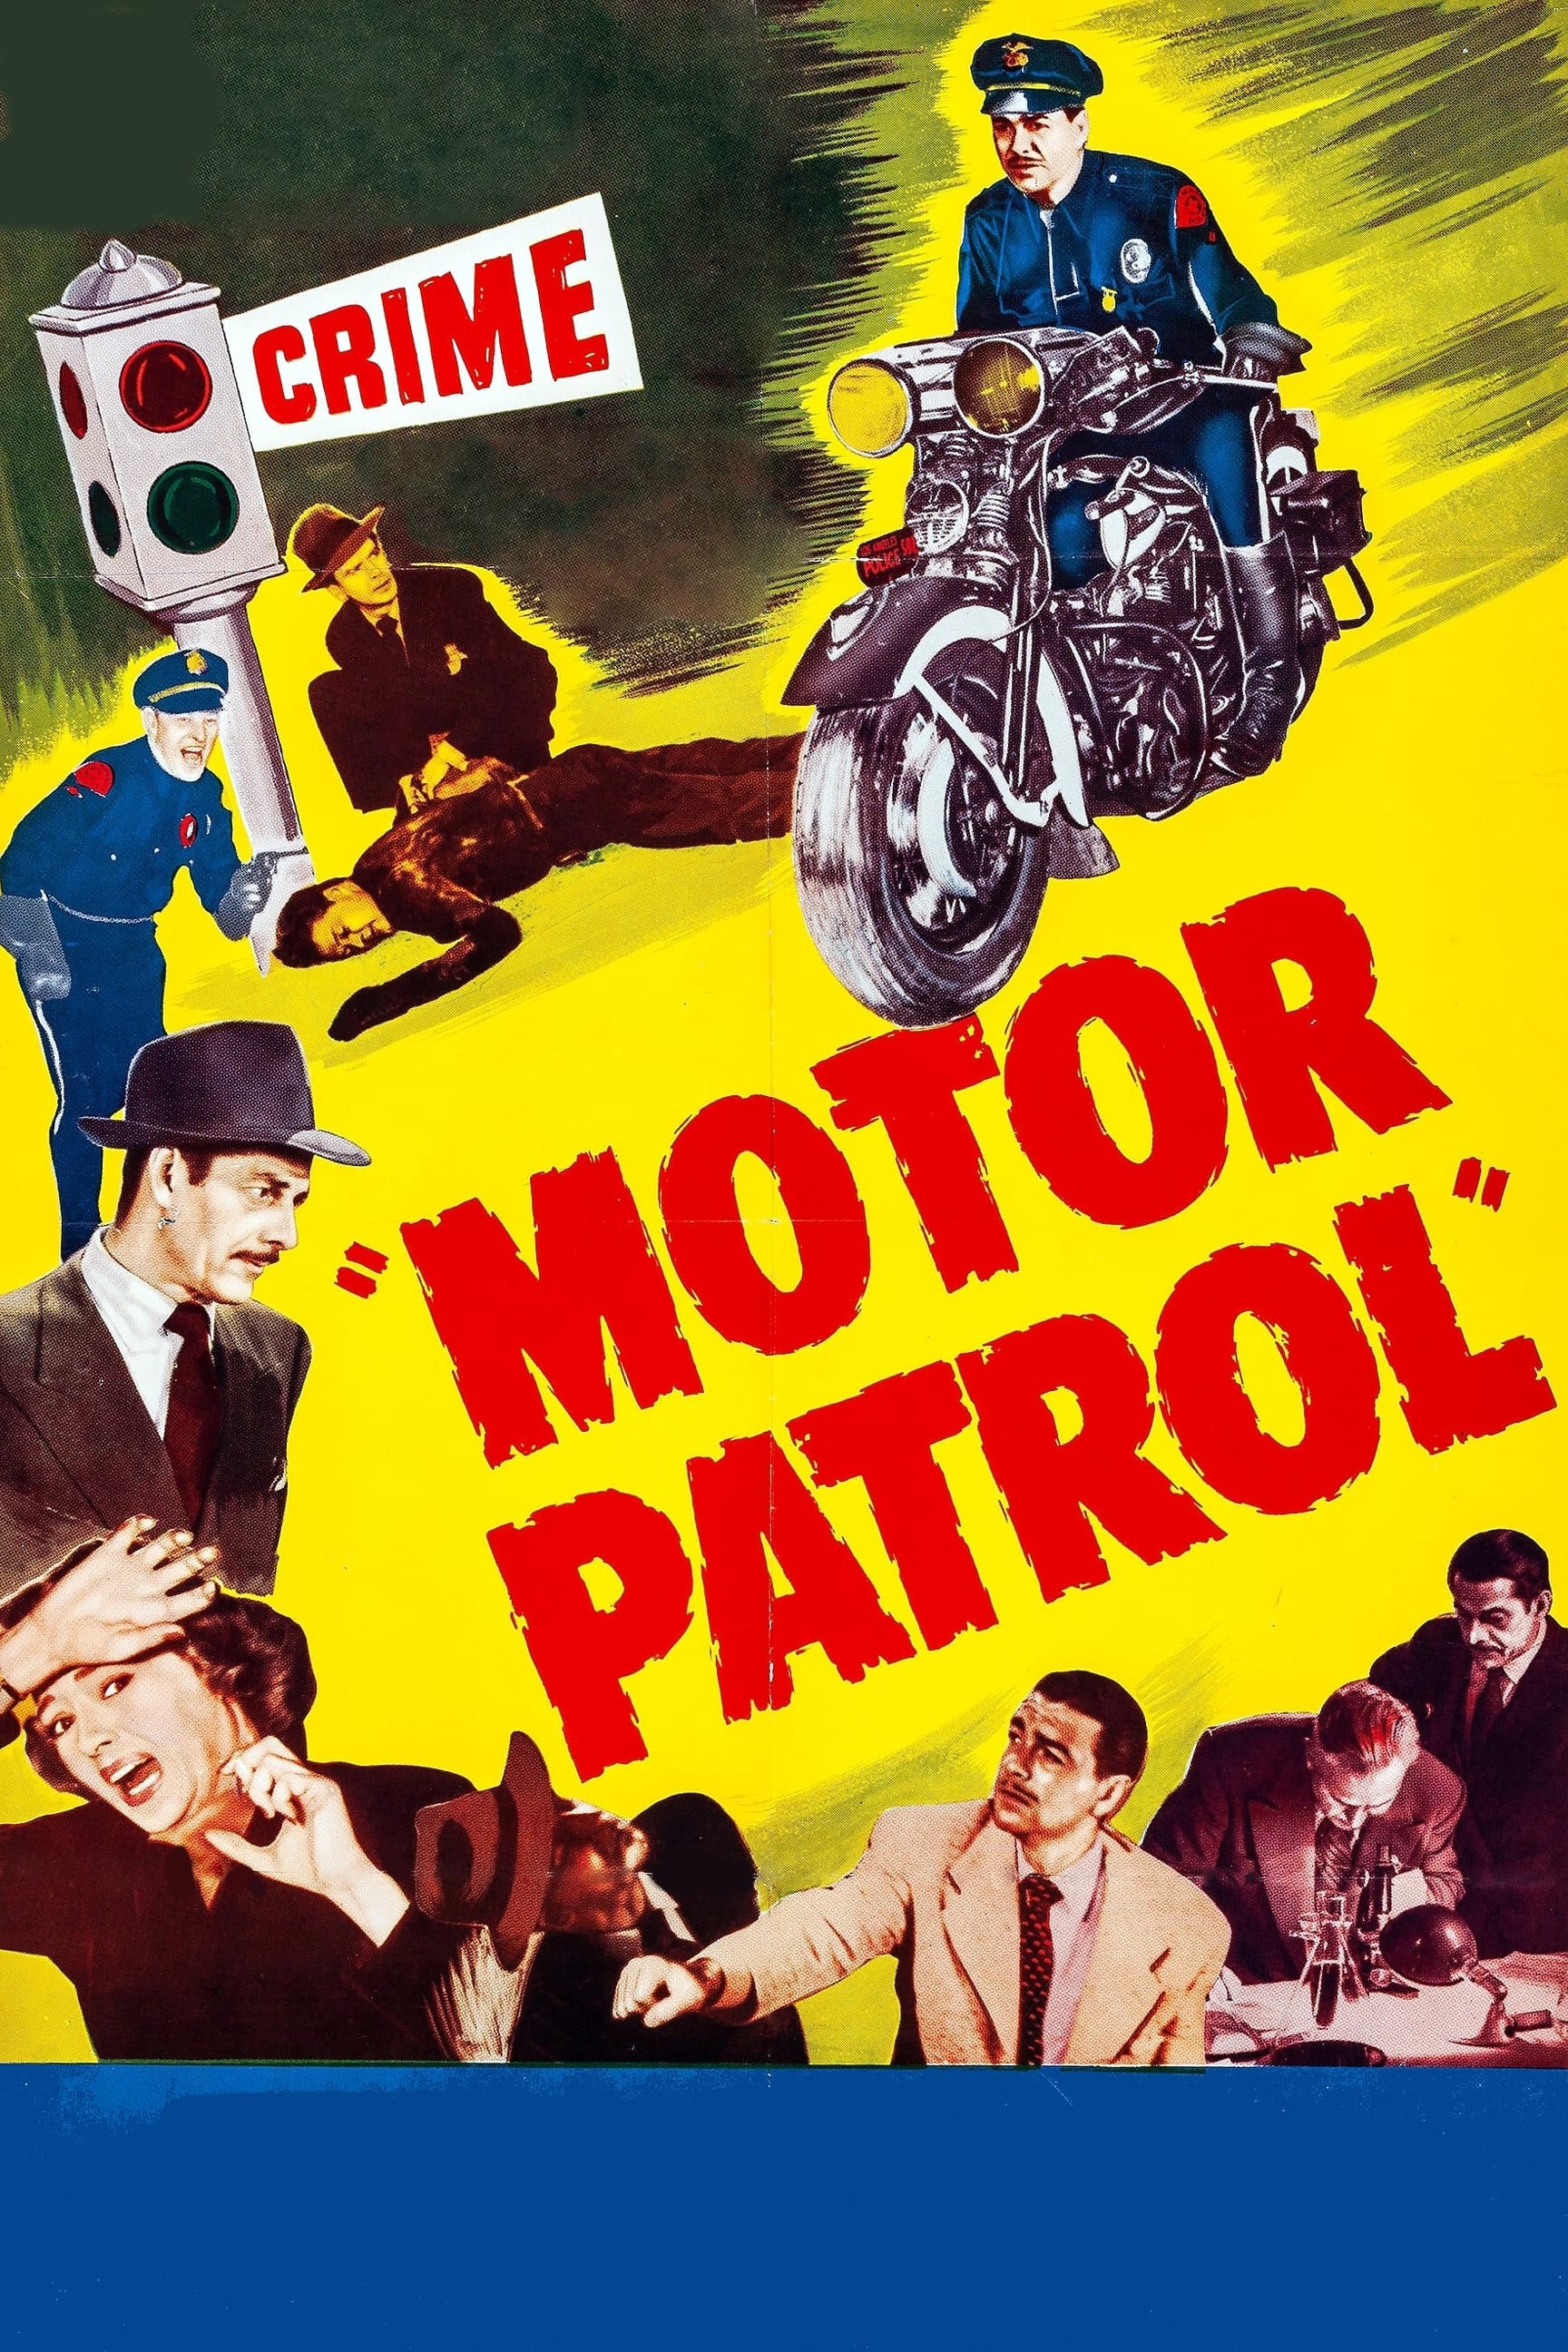 Motor Patrol